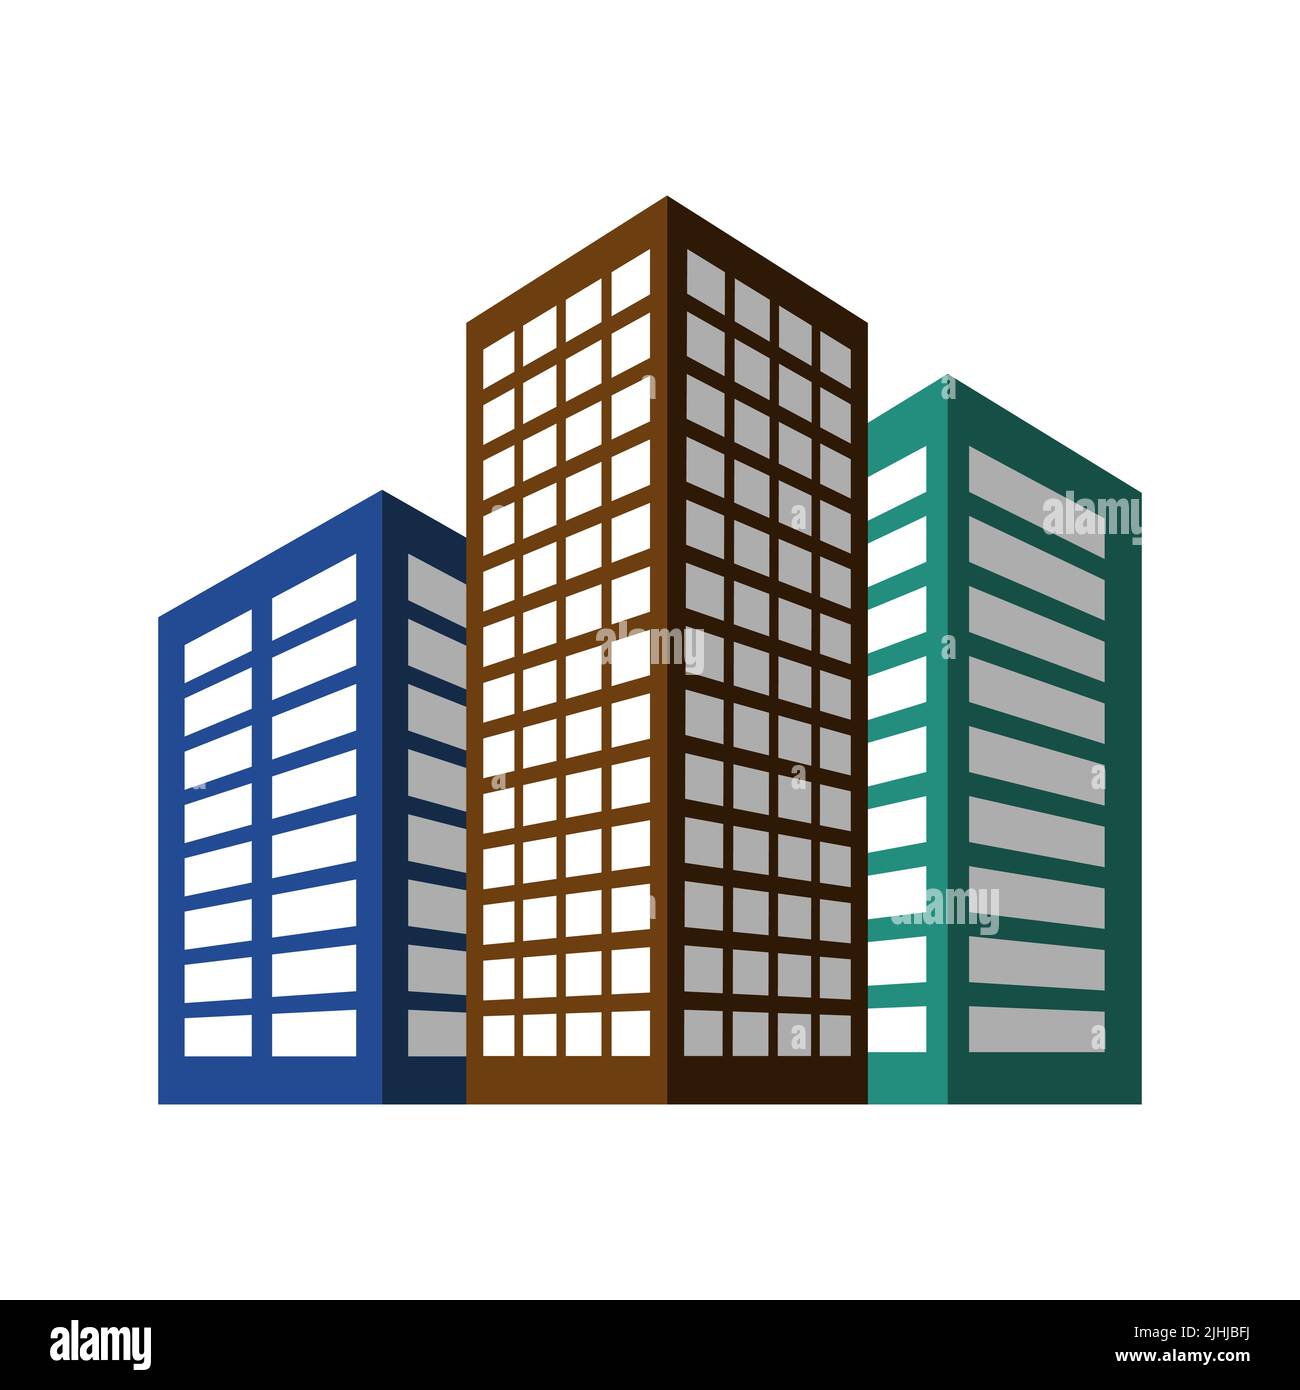 3 bâtiments résidentiels ou d'affaires, maisons d'appartements multicolores avec ombre et perspective, architecture urbaine. Icône vecteur simple. Illustration de Vecteur